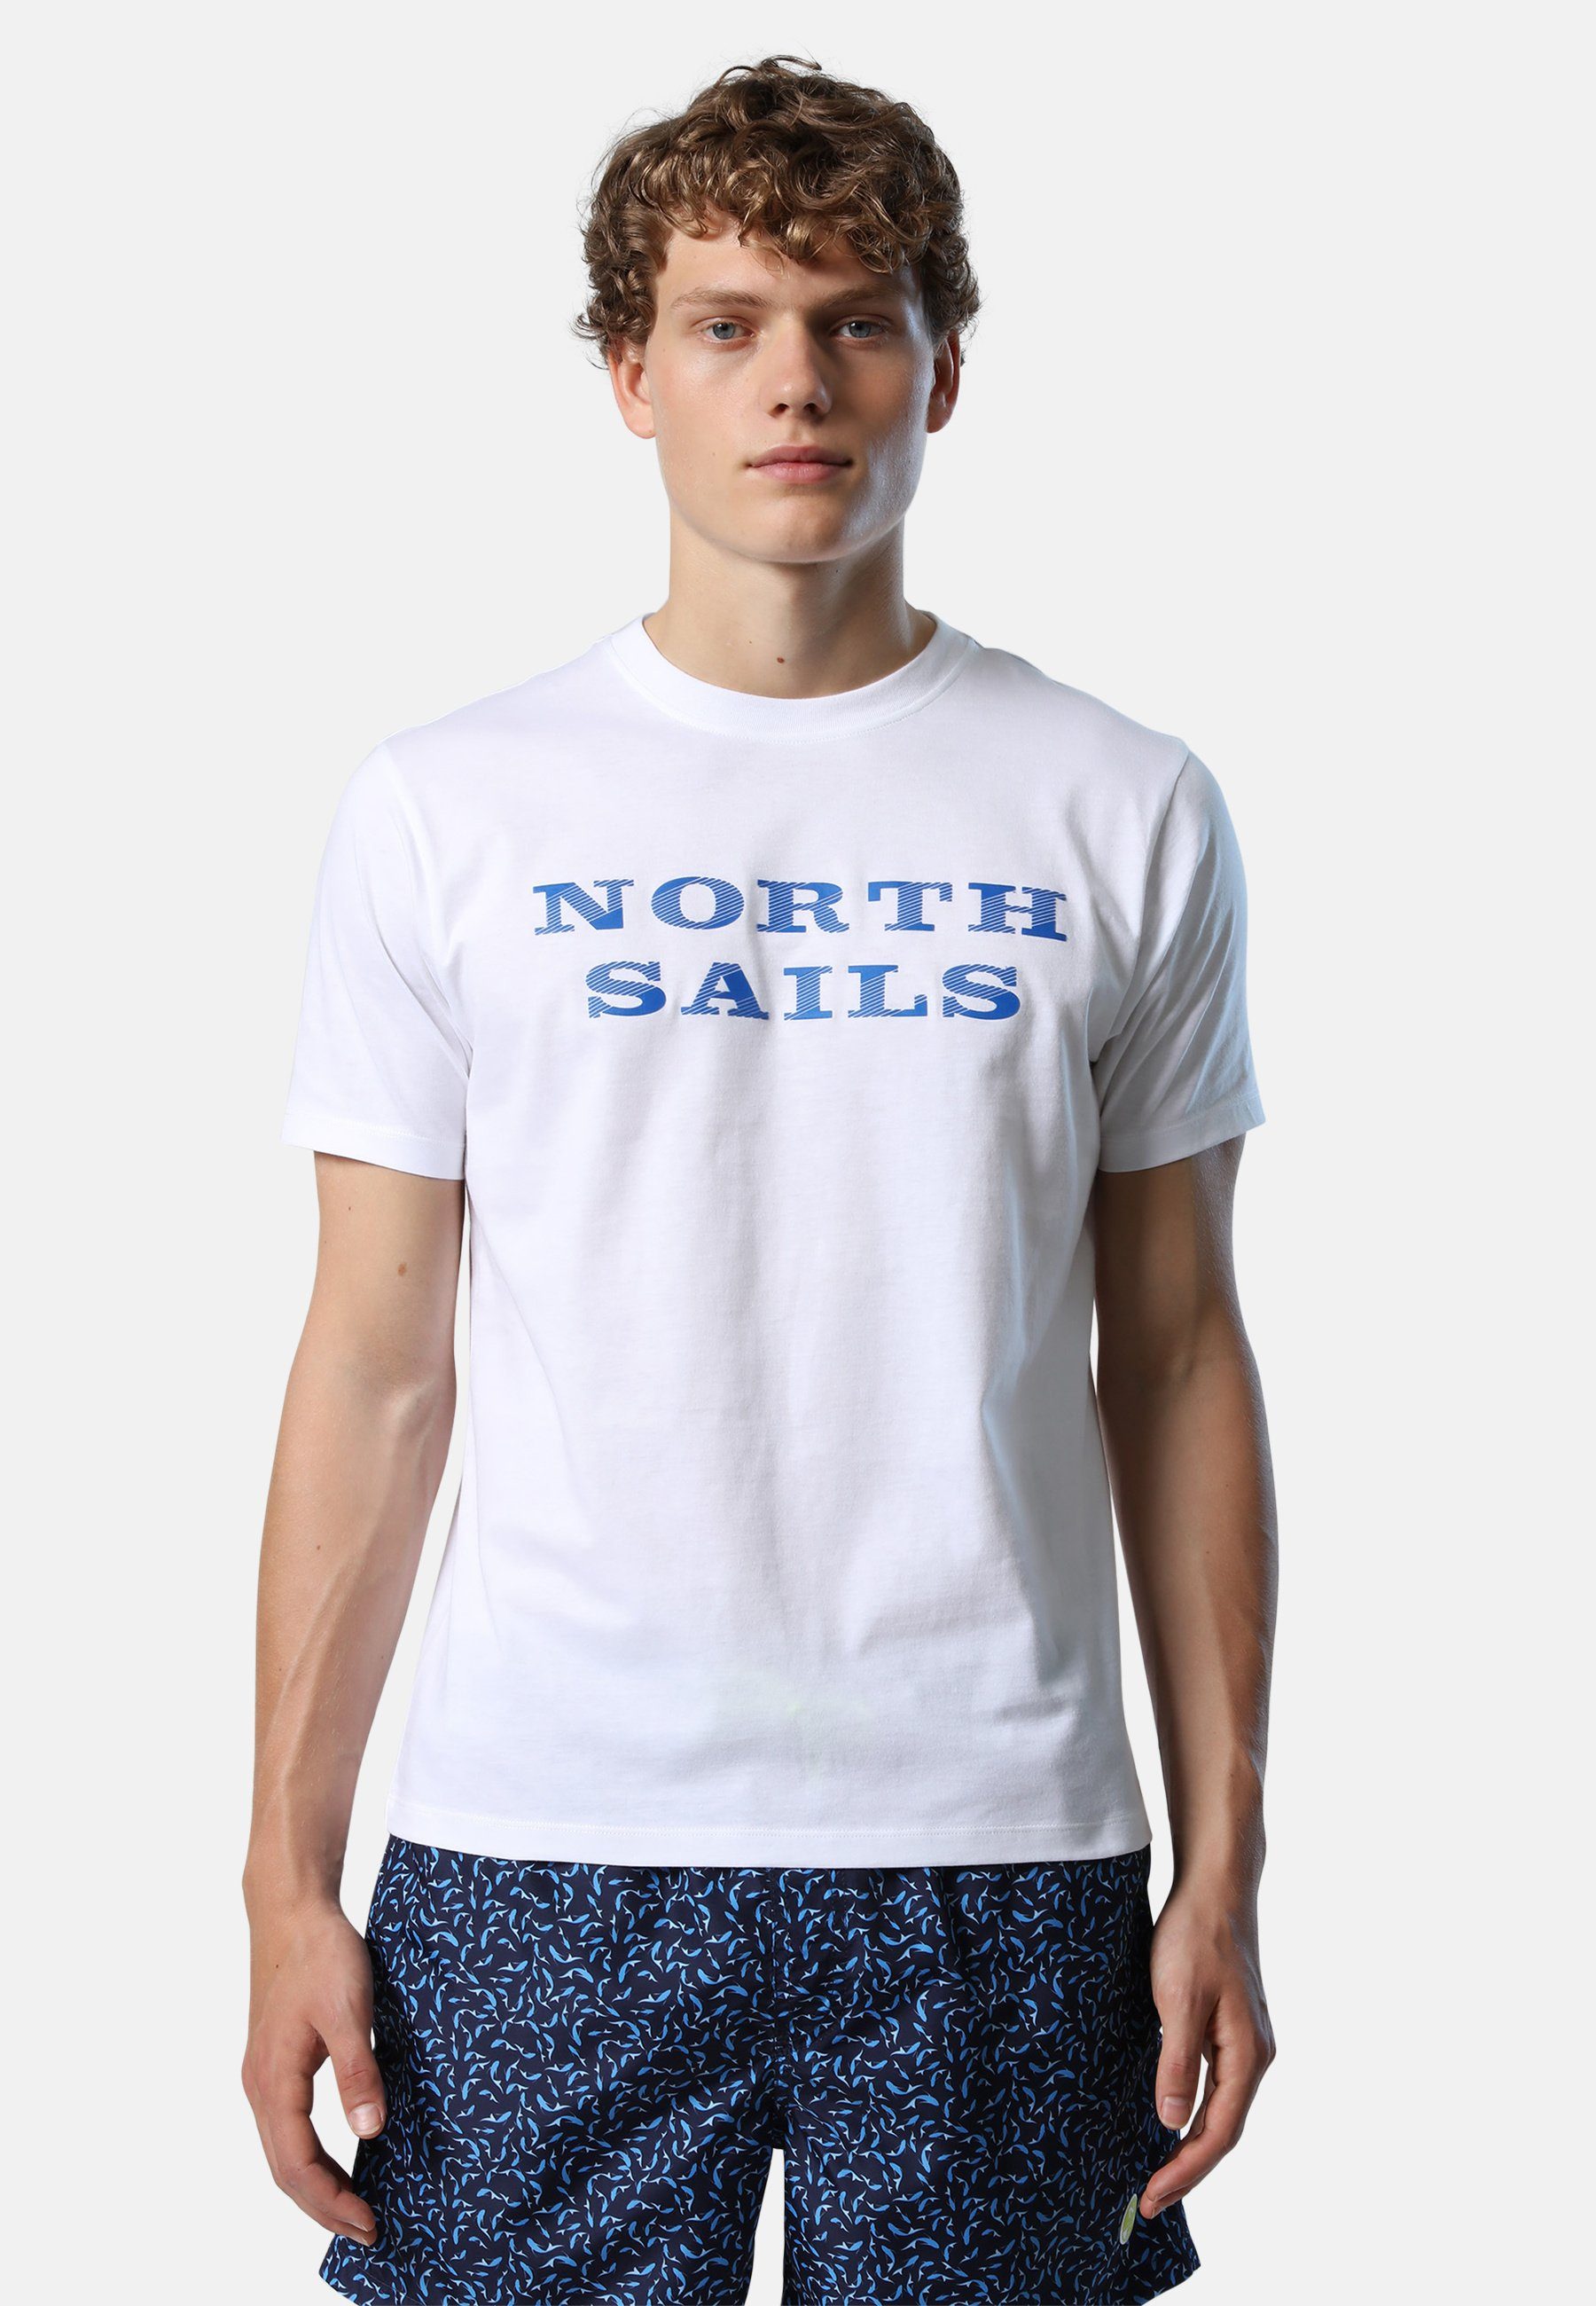 North Sails T-Shirt T-Shirt mit Brustaufdruck Ton-in-Ton-Nähte weiss